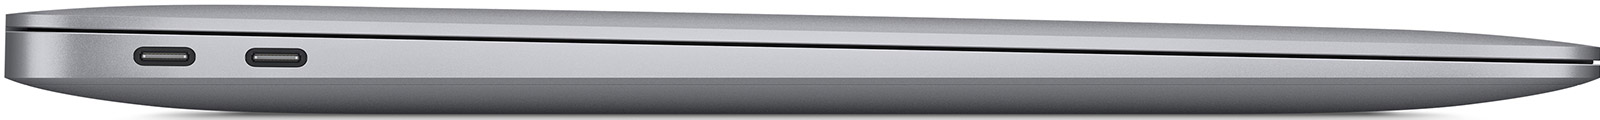 Apple-MacBook-Air-13-3-M1-8-Core-16-GB-512-GB-7-Core-Grafik-Space-Grau-CH-05.jpg